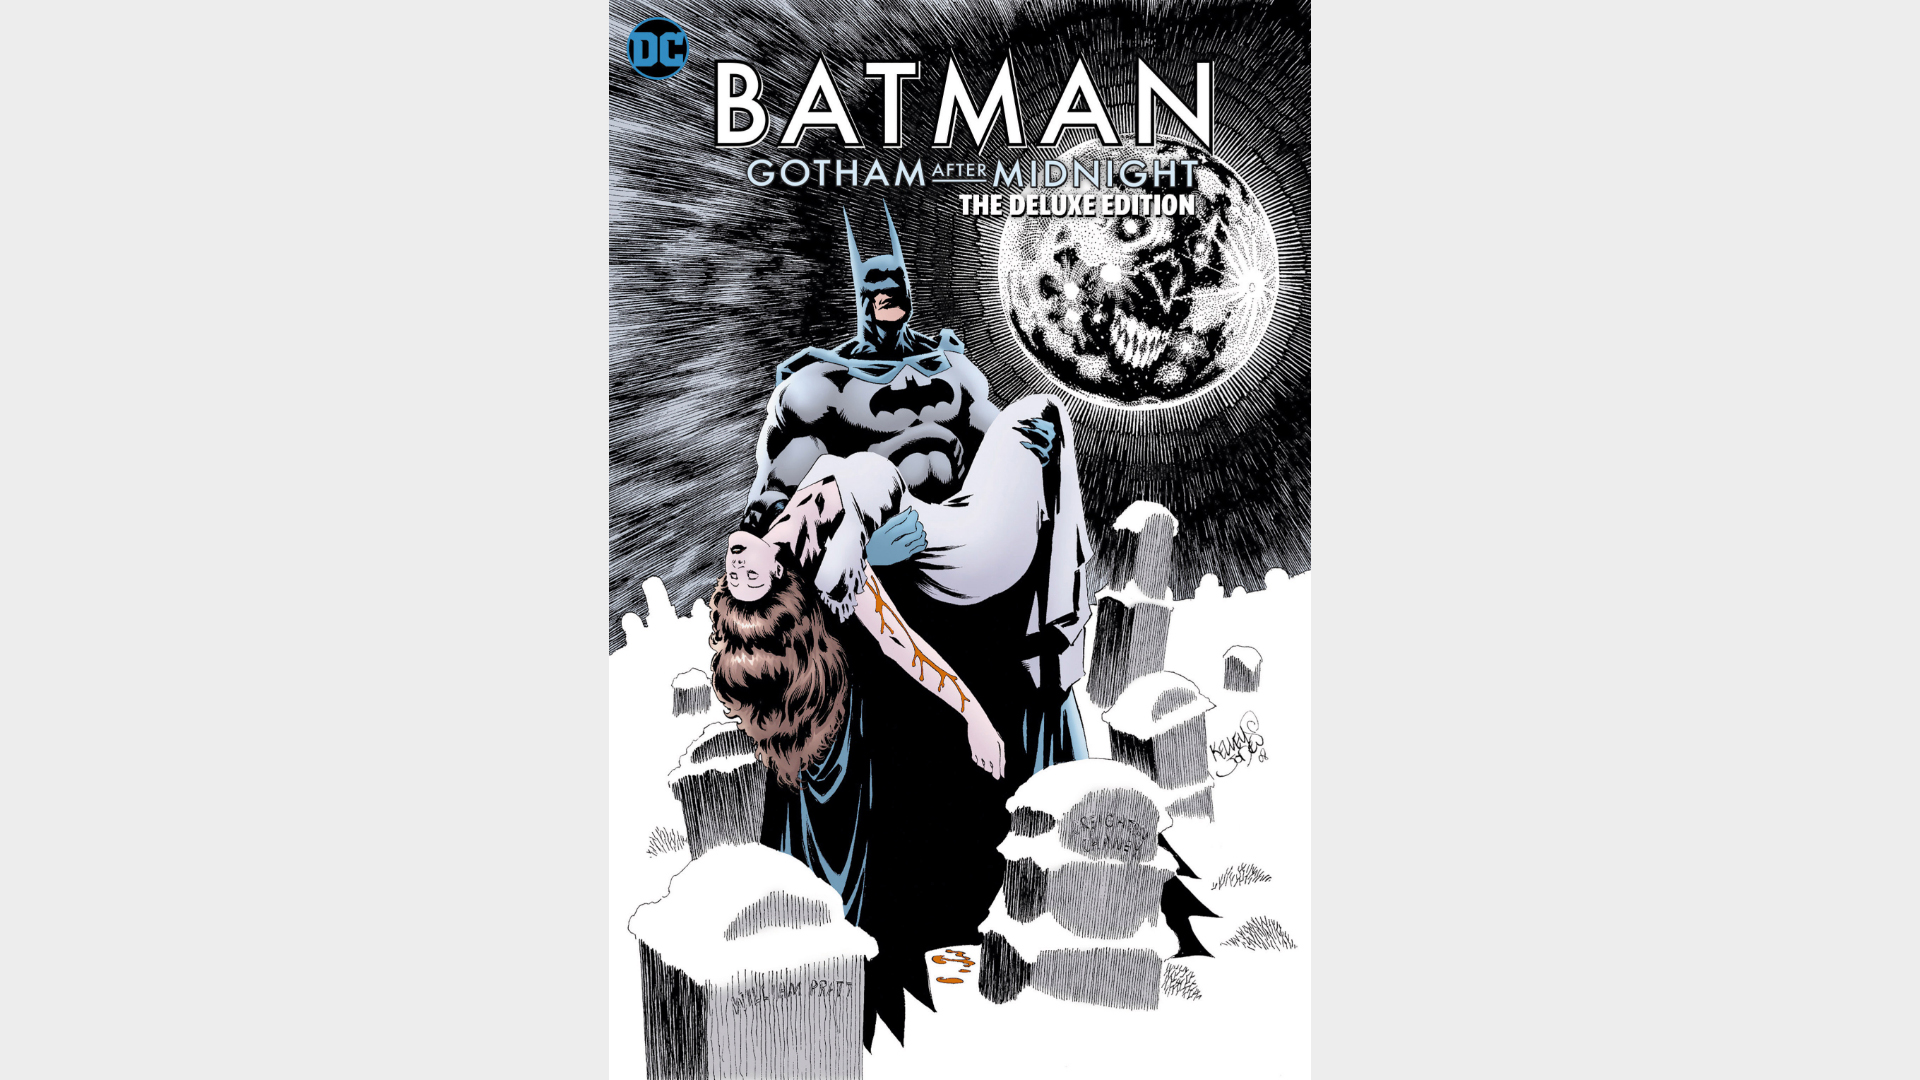 باتمان: جوثام بعد منتصف الليل: الطبعة الفاخرة